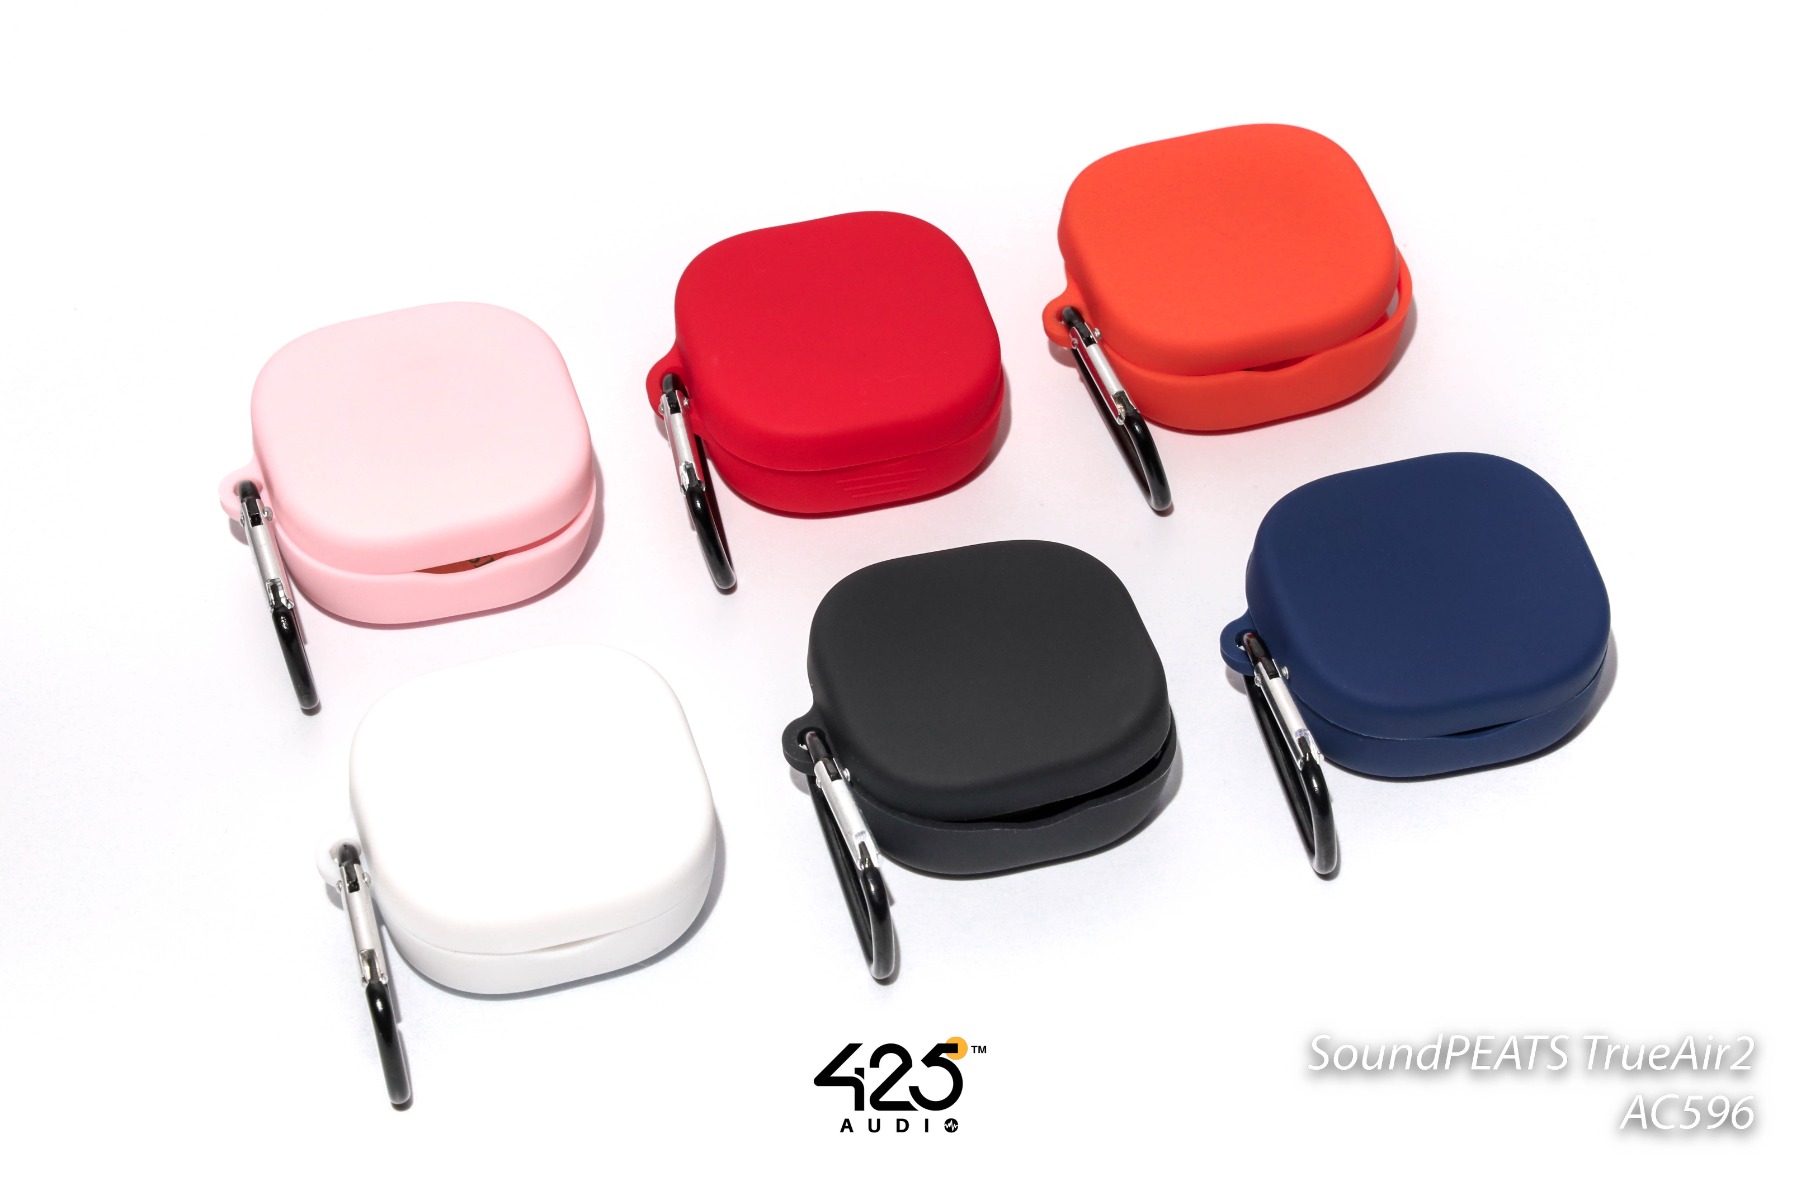 เคสซิลิโคนหูฟัง SoundPEATS Trueair2 Silicone Case เคสตกแต่งกล่องหูฟัง ปกป้องกันรอยขีดข่วนหรือกันกระแทกได้ดี คุณภาพวัสดุแข็งแรง มีสีให้เลือก 6 สี ดำ,ขาว,น้ำเงิน,แดง,ส้ม,ชมพู